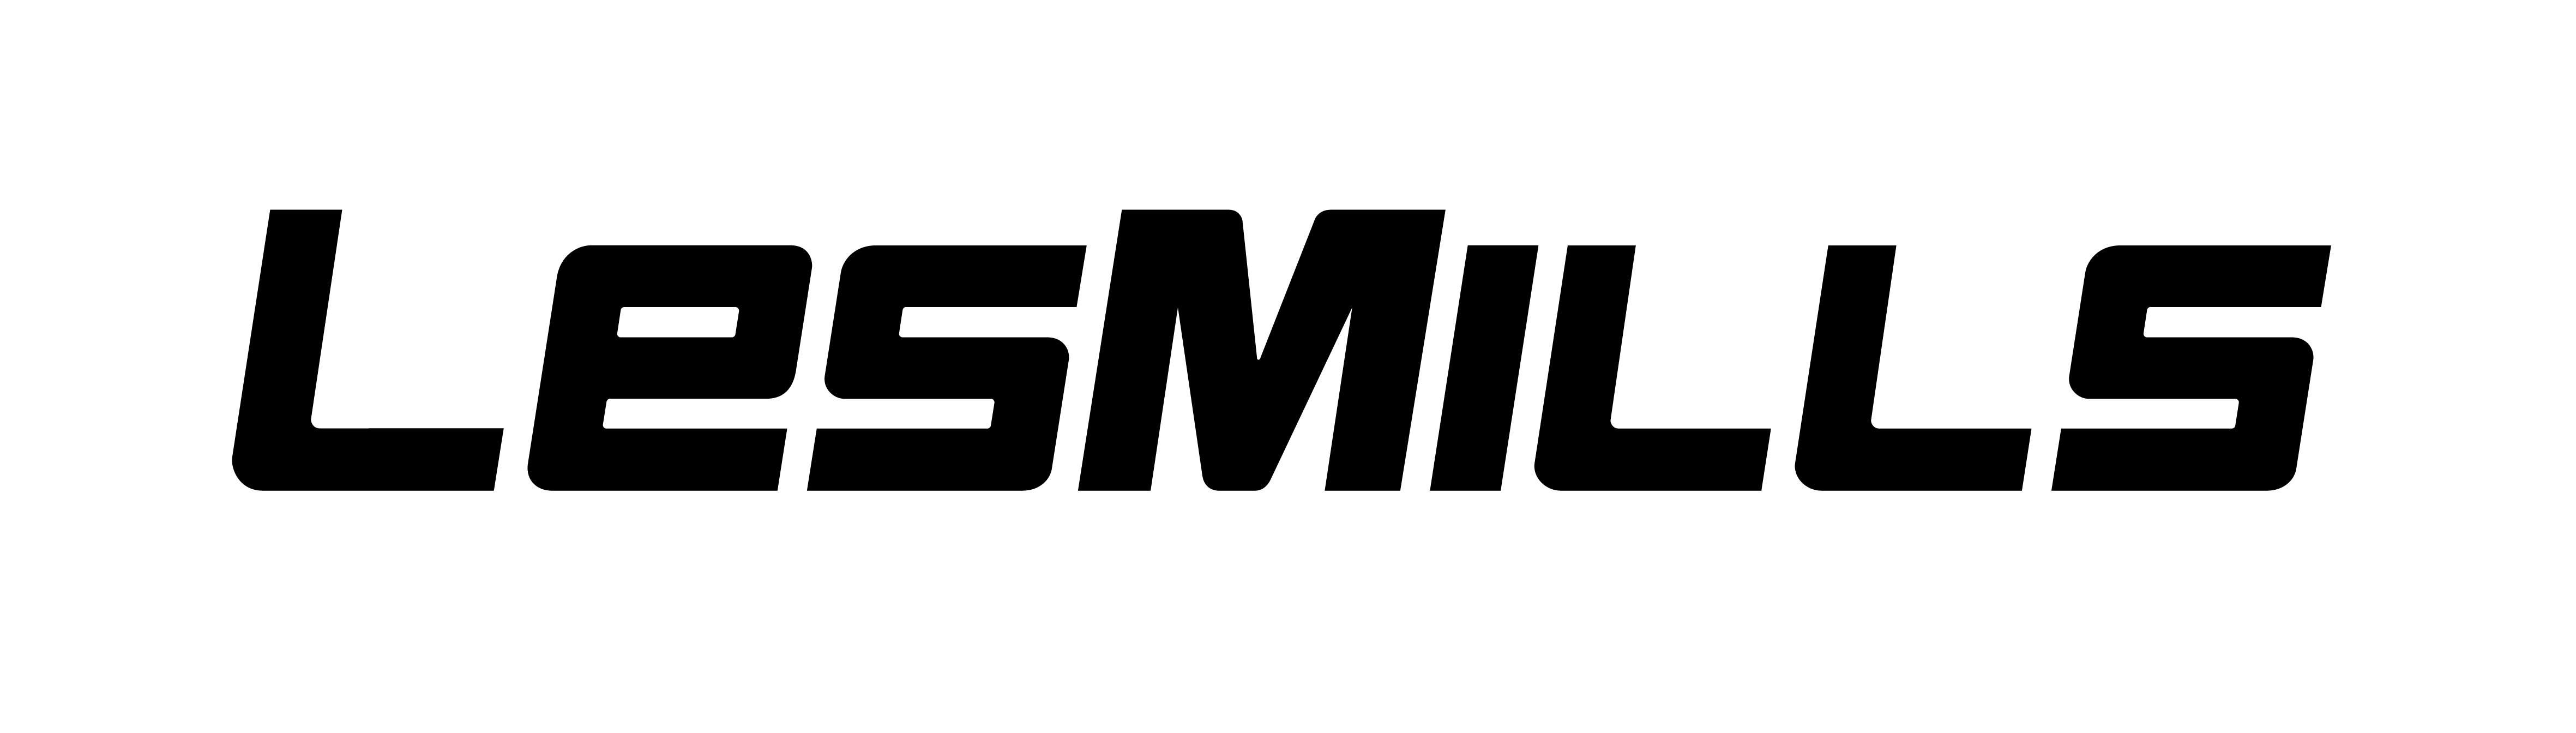 les-mills logo